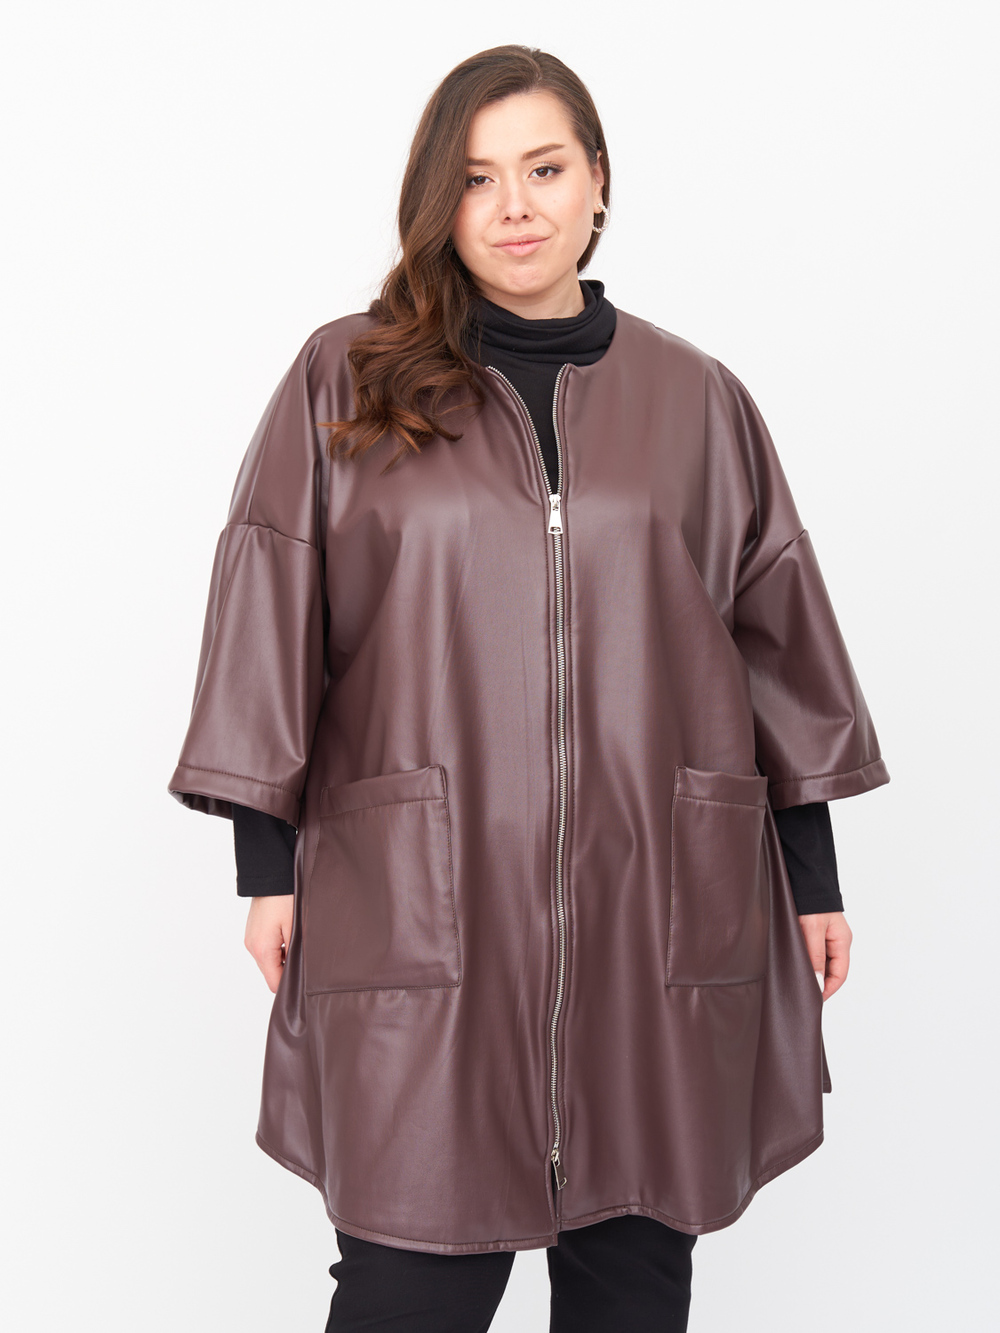 Пальто женское ZORY ZPL20021BRW20 коричневое 48-50 RU